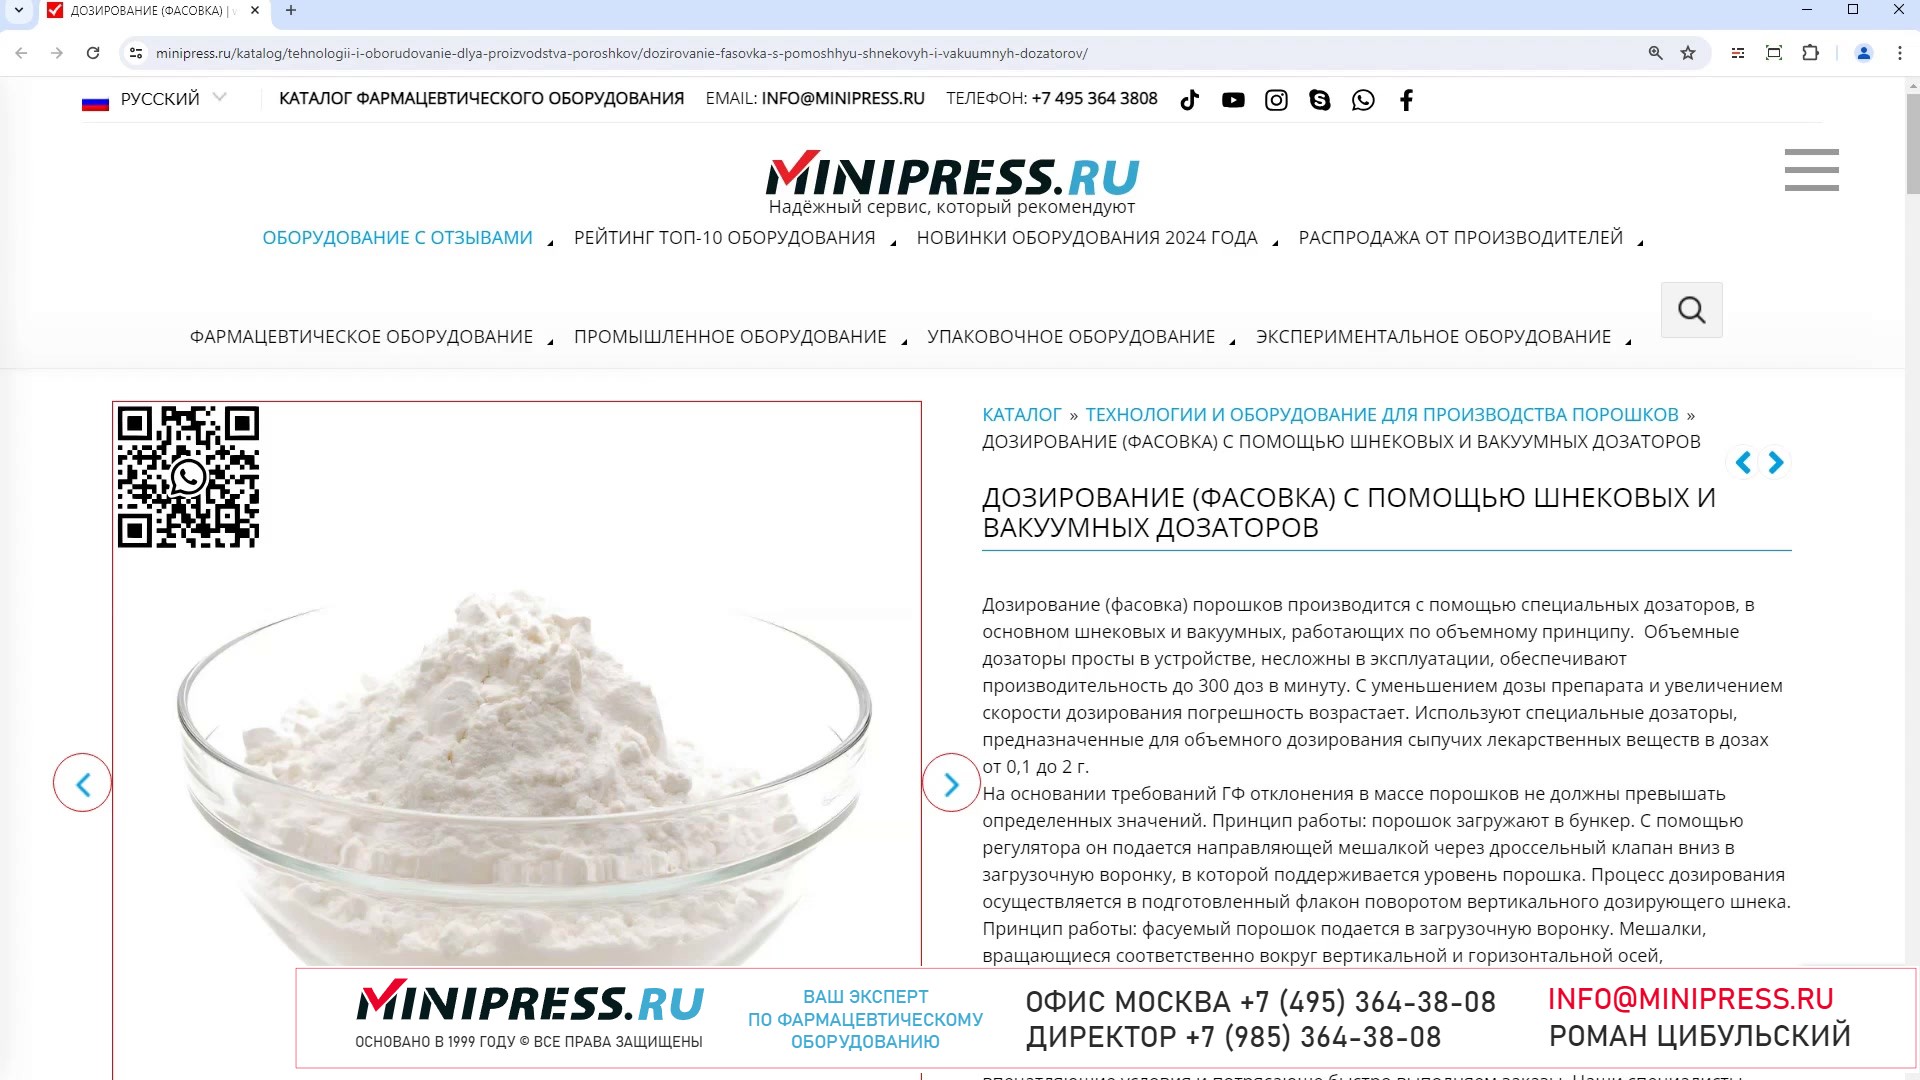 Minipress.ru Дозирование (фасовка) с помощью шнековых и вакуумных дозаторов